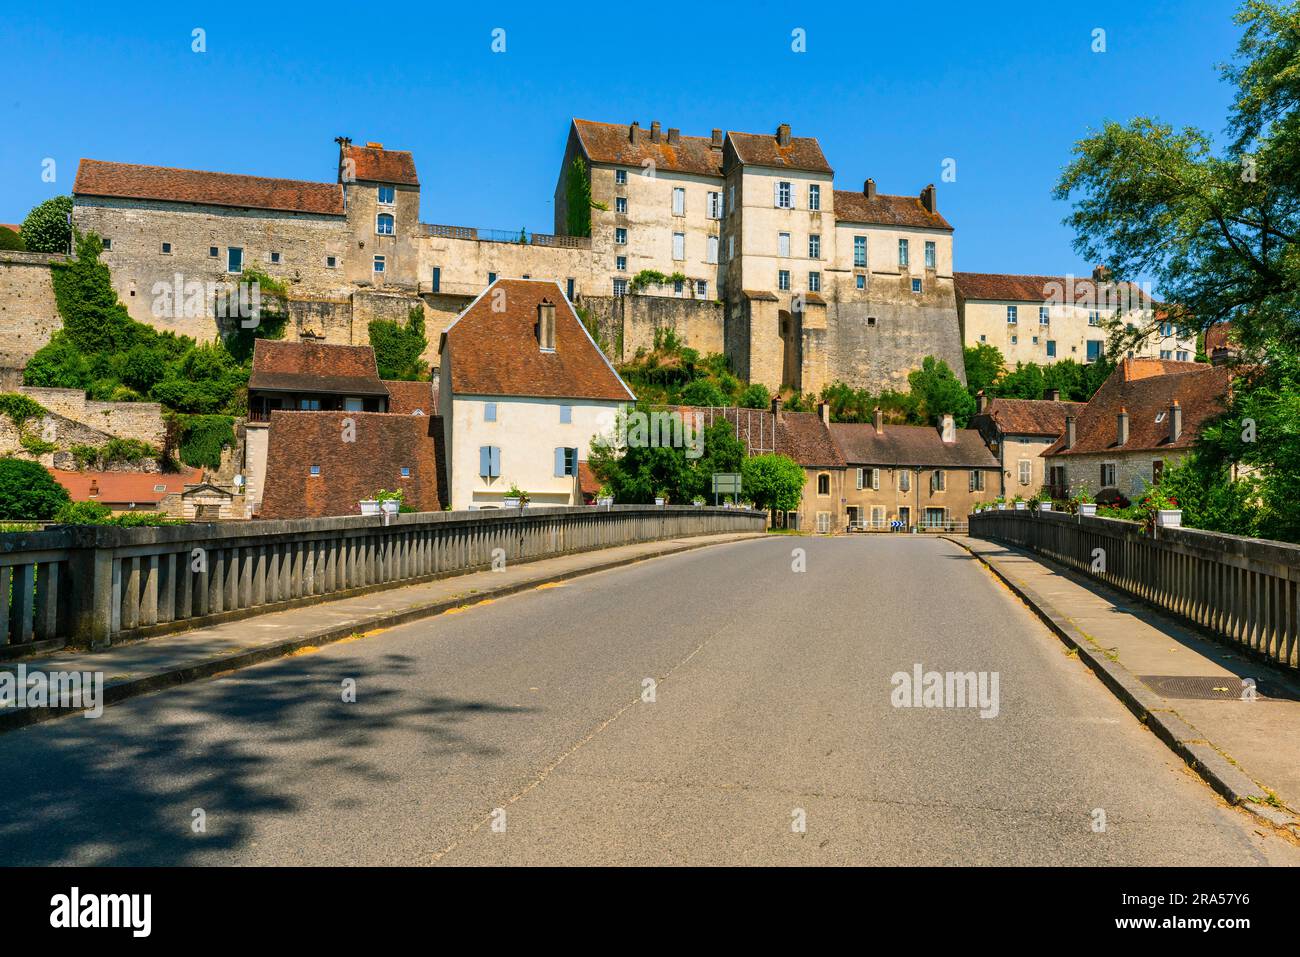 Pesmes, vicino al fiume Ognon. Pesmes è un comune della Francia orientale facente parte del dipartimento dell'alta Saône nella regione della Bourgogne-Franche-Comté. Foto Stock